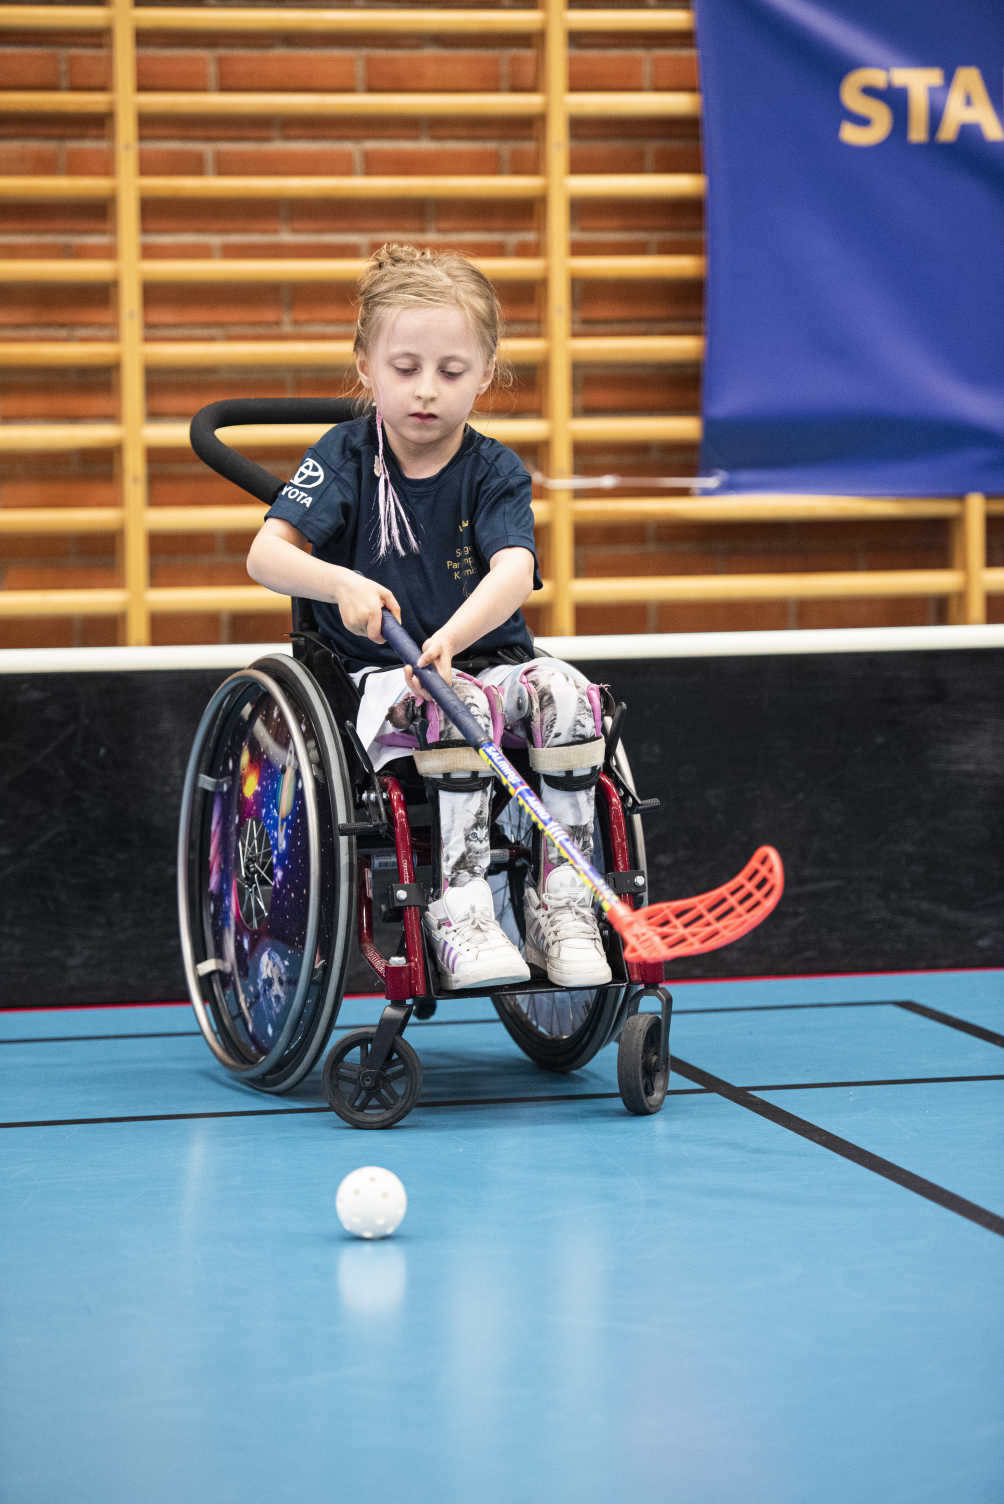 En flicka spelar rullstolsinnebandy i en idrottshall.